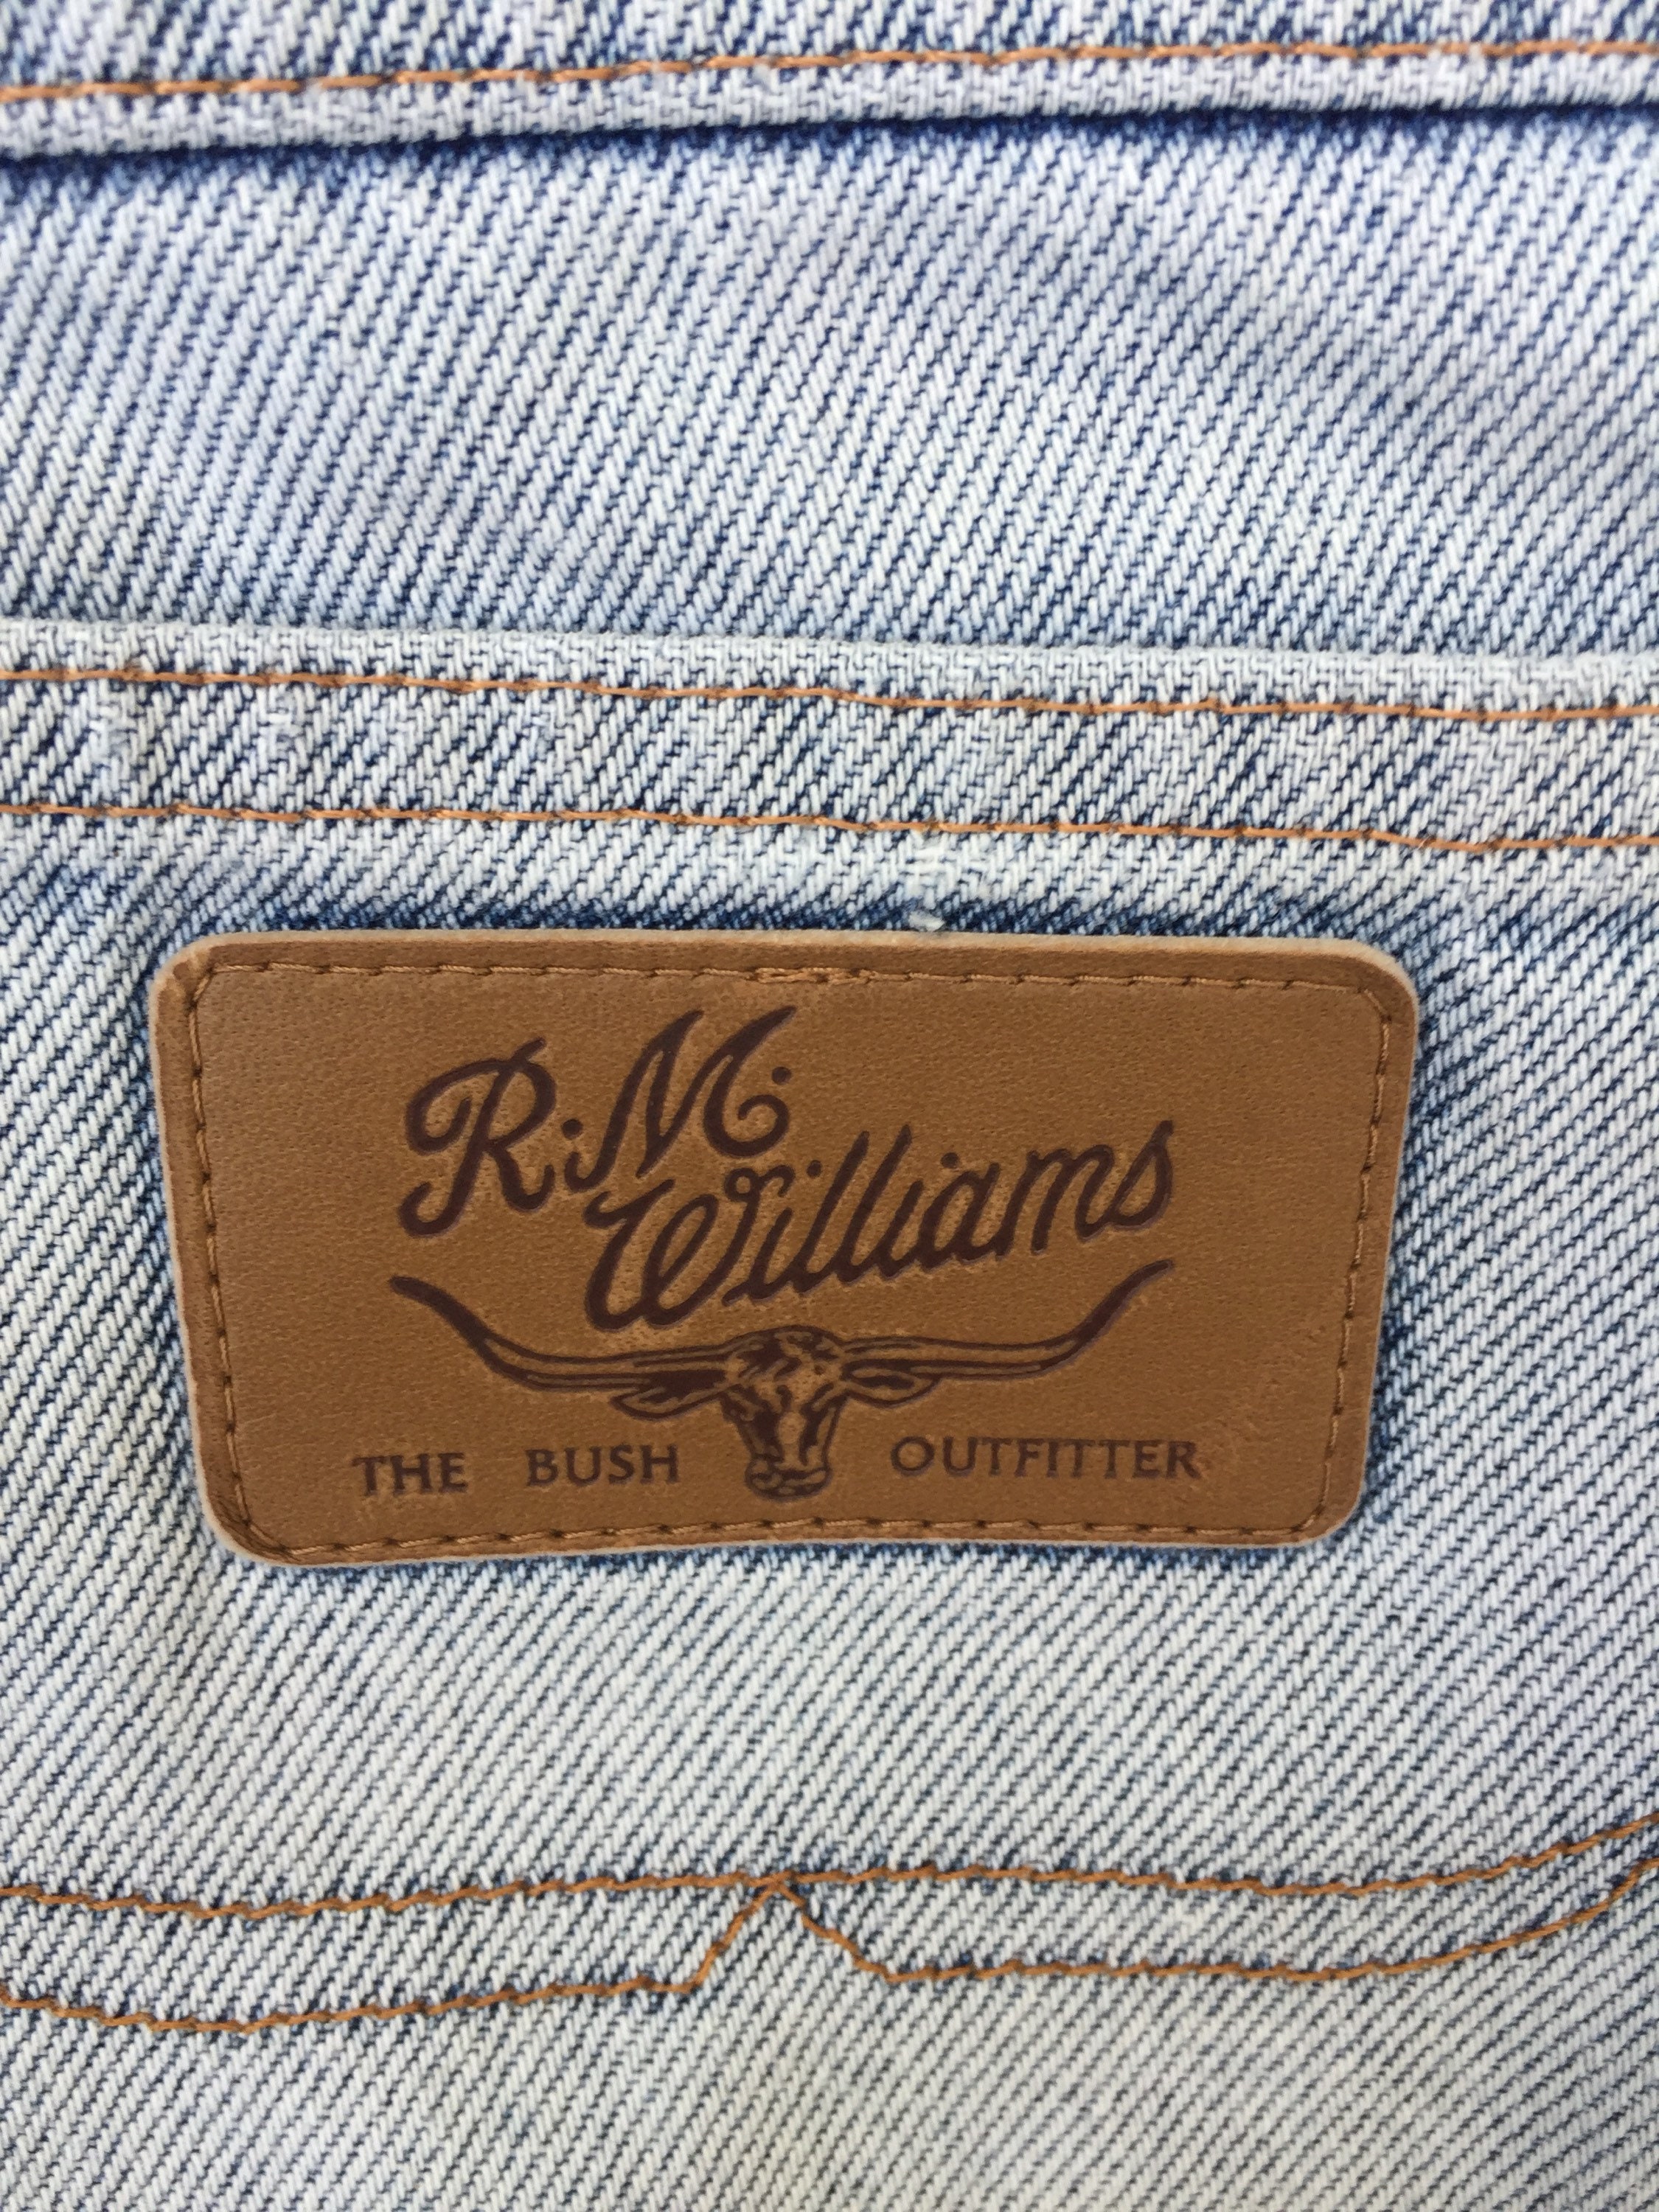 Vintage RM Williams jeans medium large | Etsy